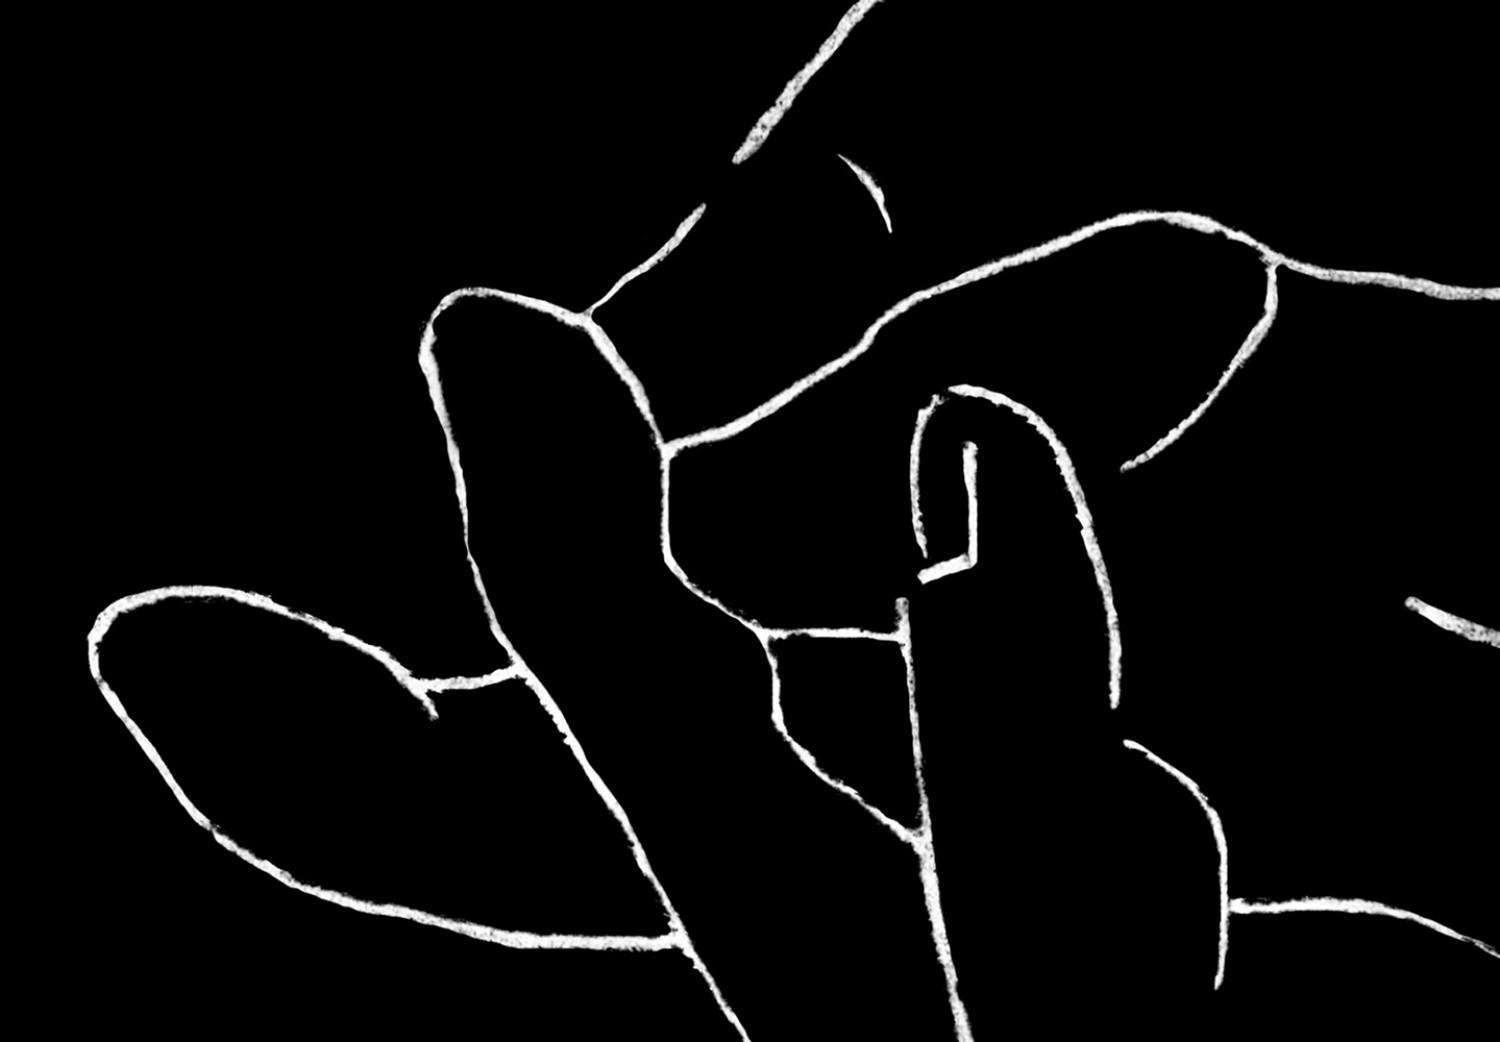 Cuadro Toque al estilo lineart (1 parte) - manos en blanco y negro